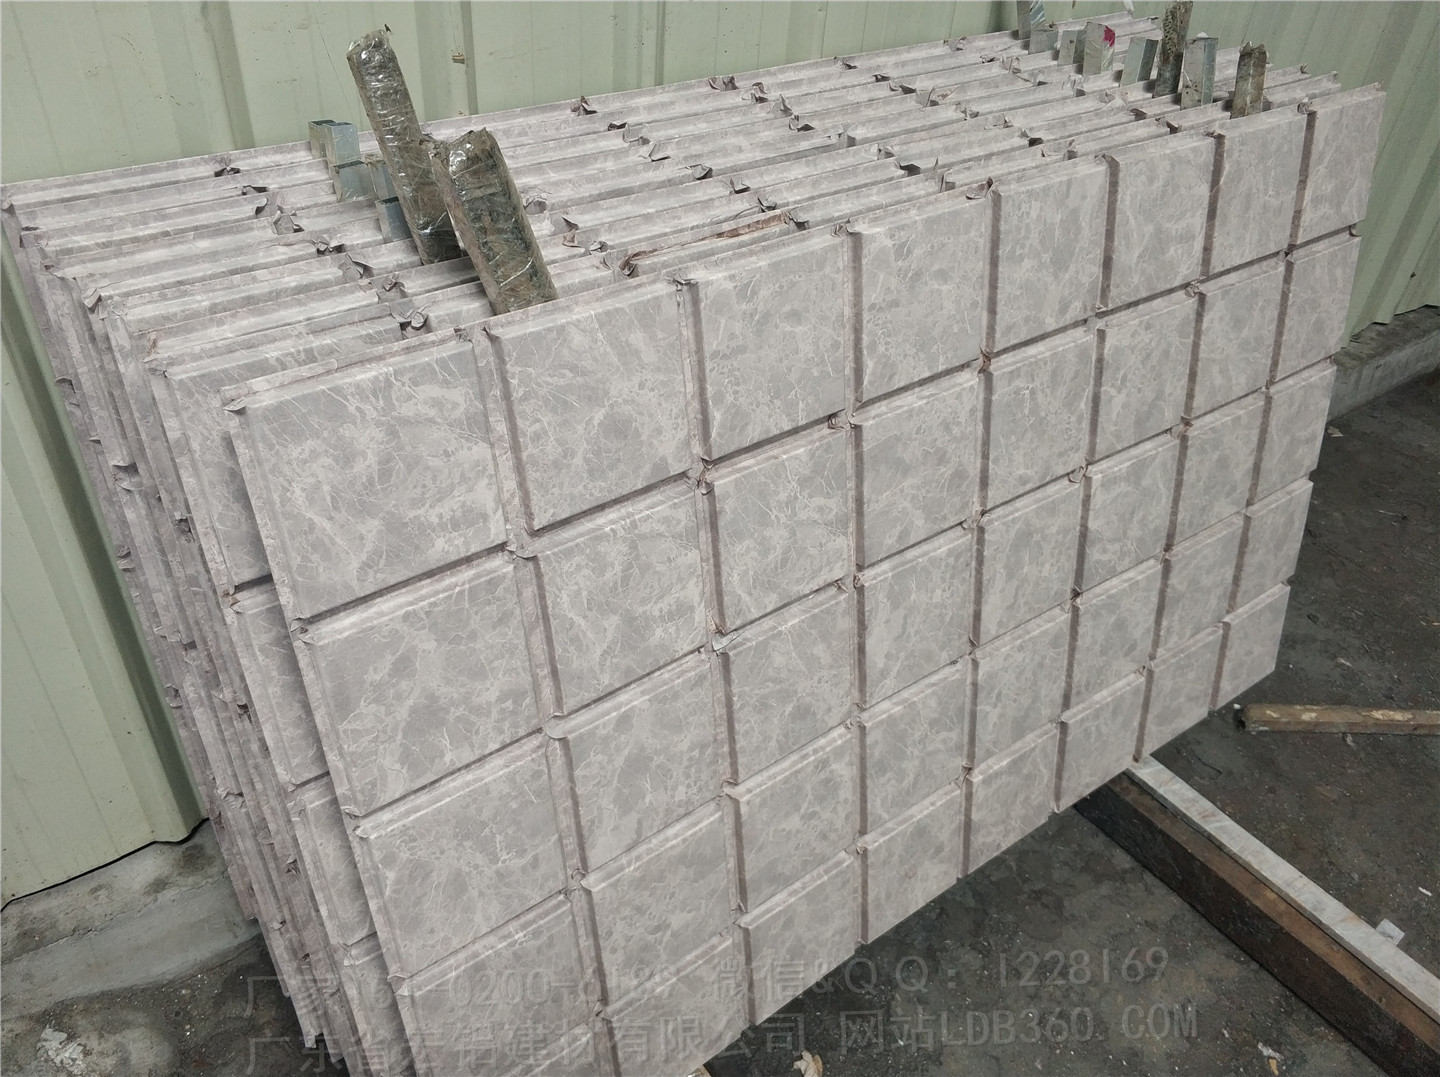 供应铝单板幕墙生产厂家；仿石纹铝幕墙生产公司 铝幕墙批发报价，异型铝幕墙